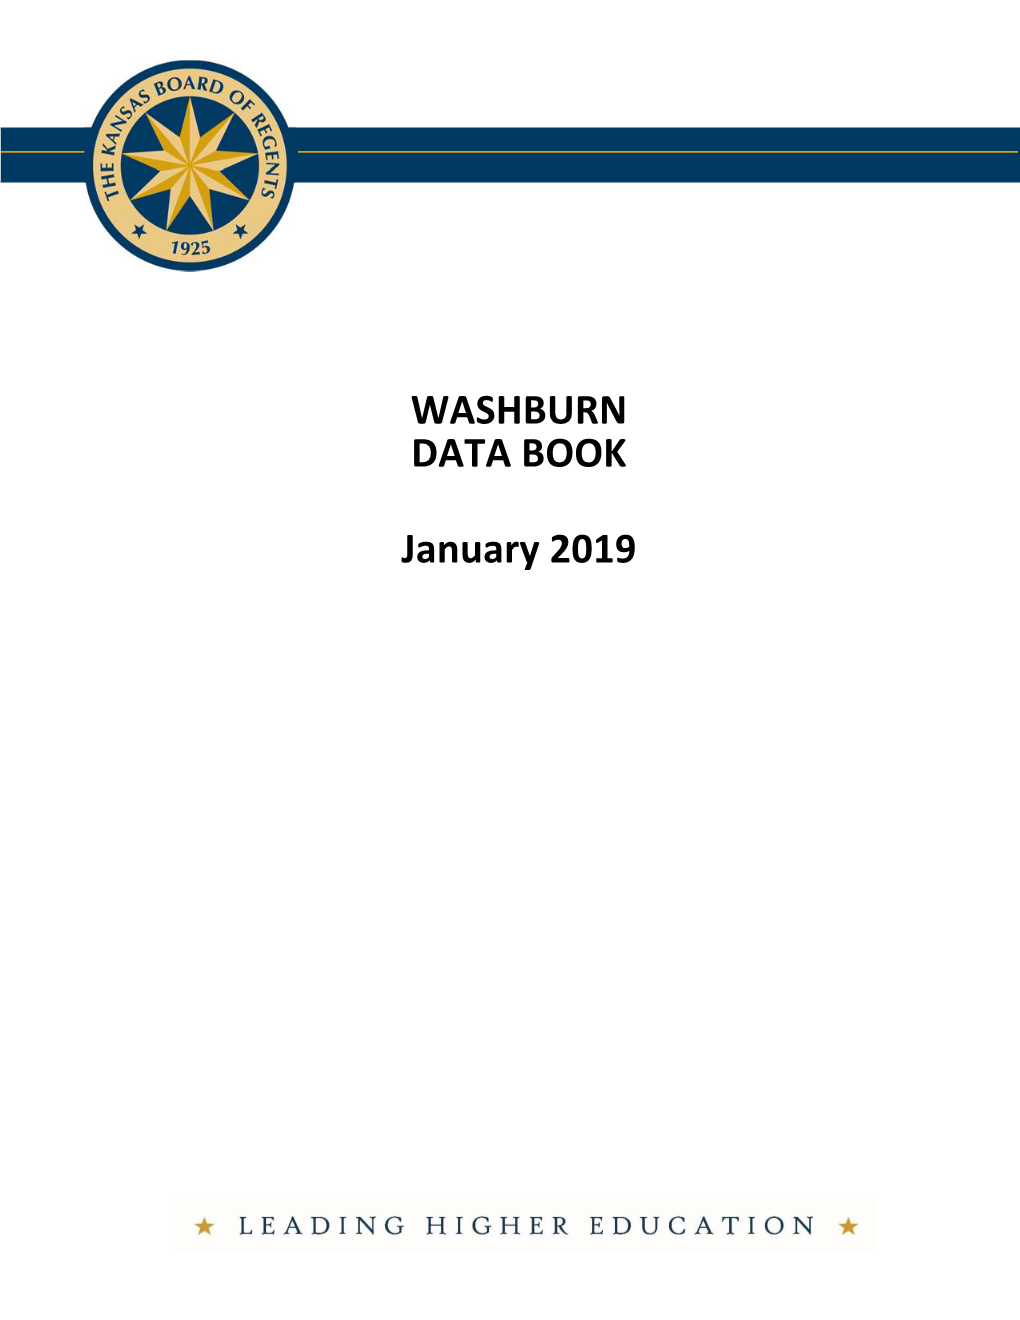 WASHBURN DATA BOOK January 2019